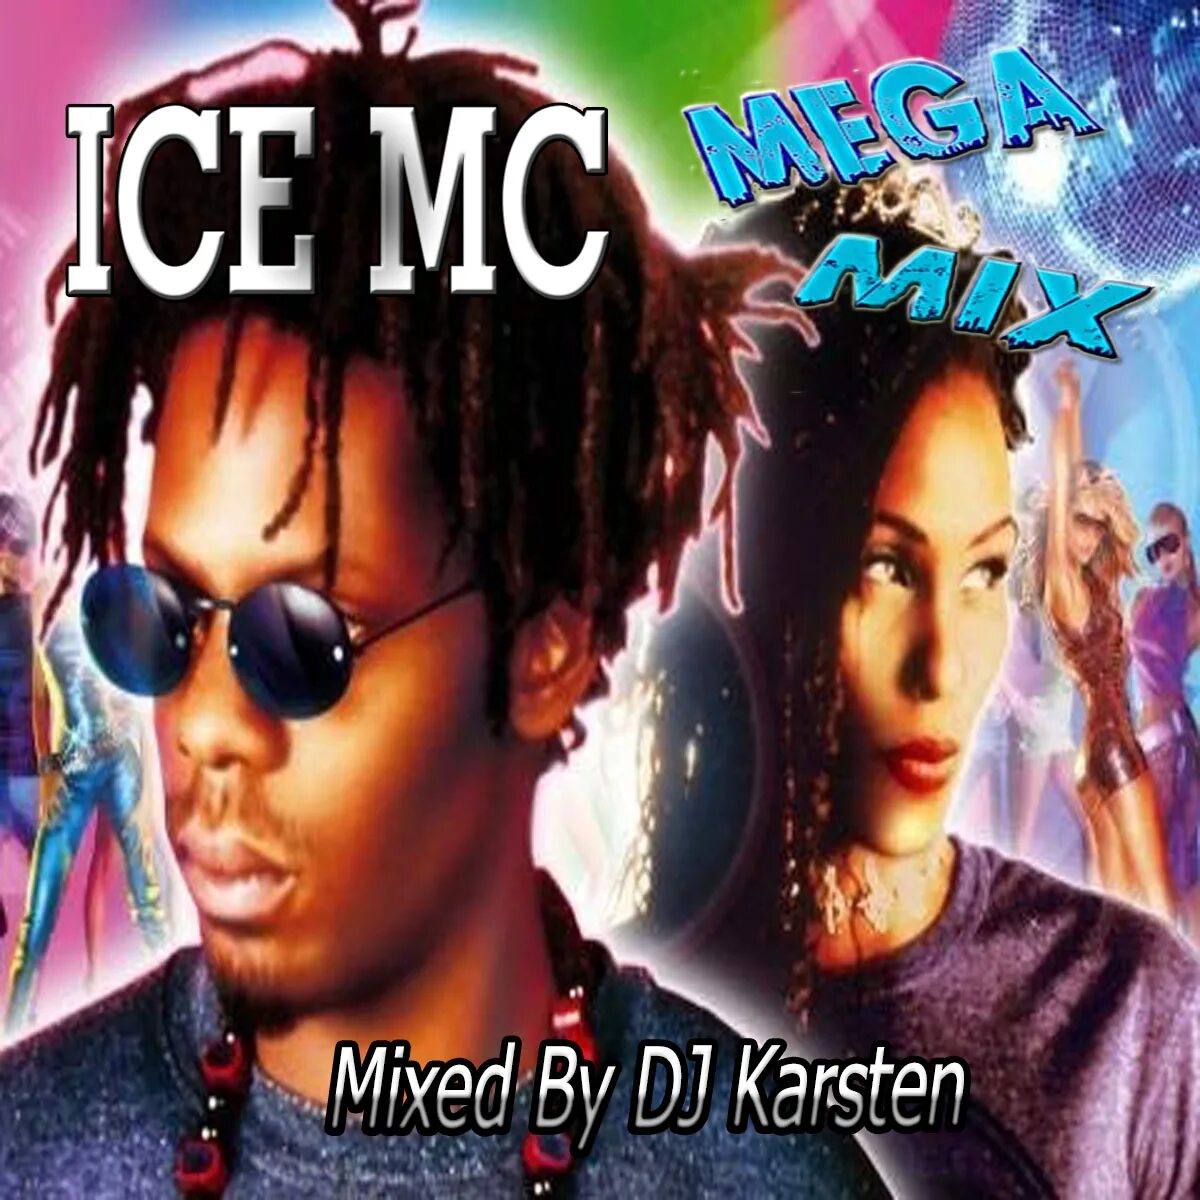 Ice mc feat. Группа Ice MC. Ice MC обложки. Ice MC 1991.